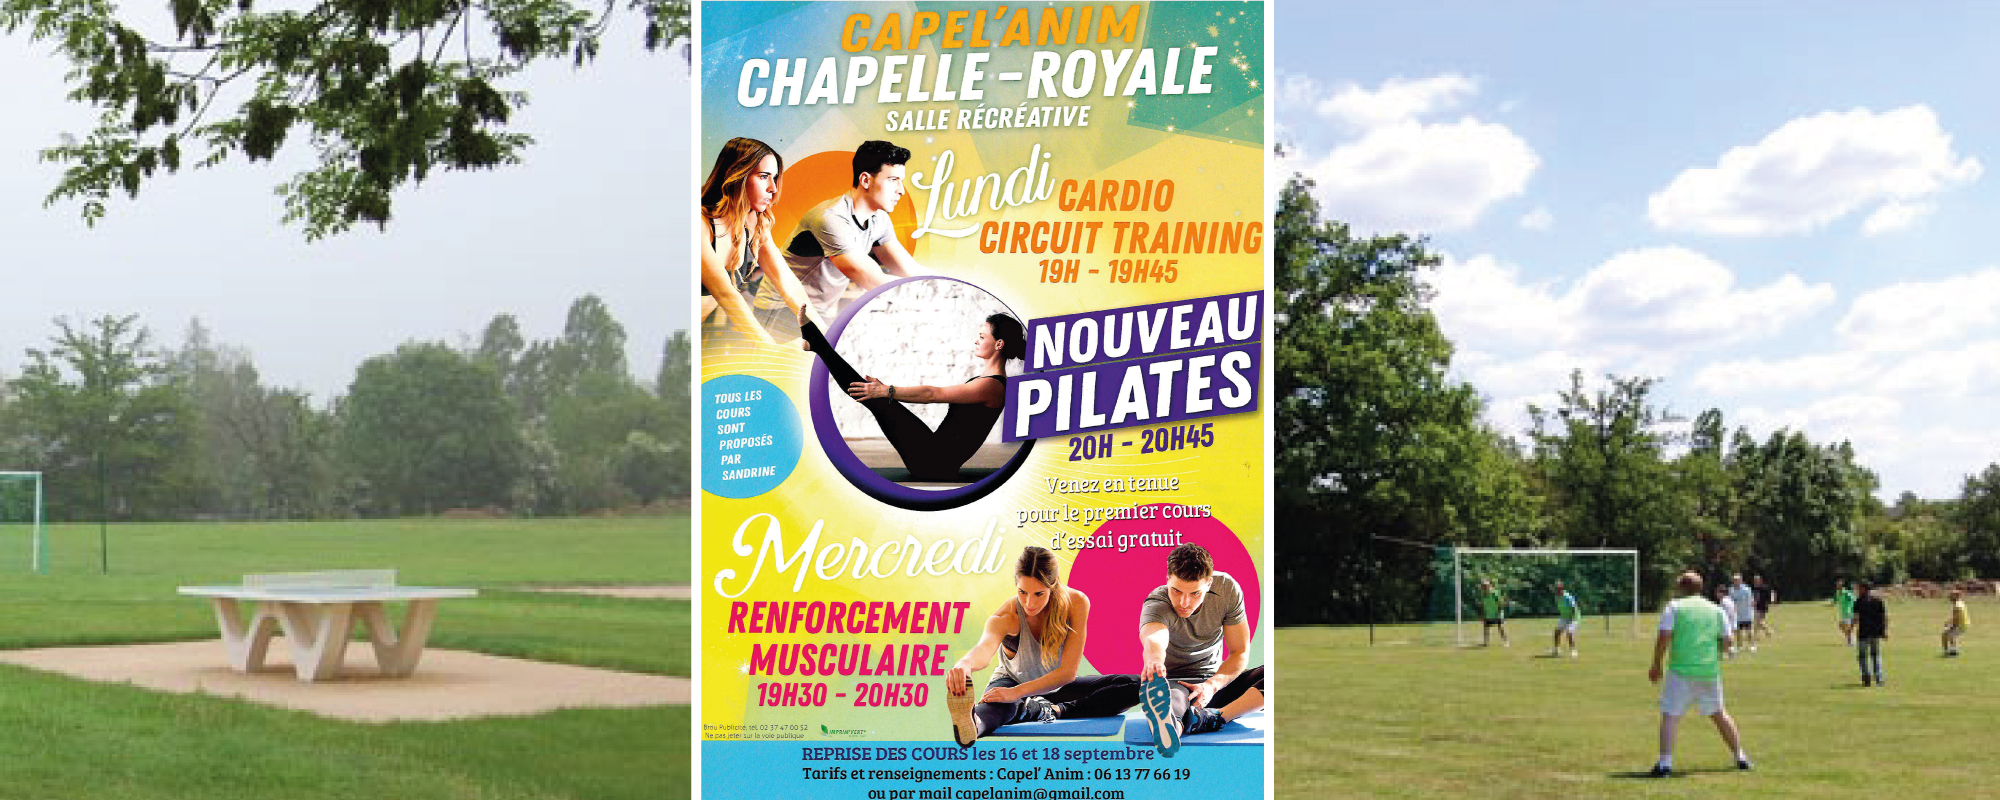 Vous cherchez une activité sportive ou connaître nos infrastructures sportives sur la de la mairie du village Chapelle Royale en Eure et Loir dans le Perche ?